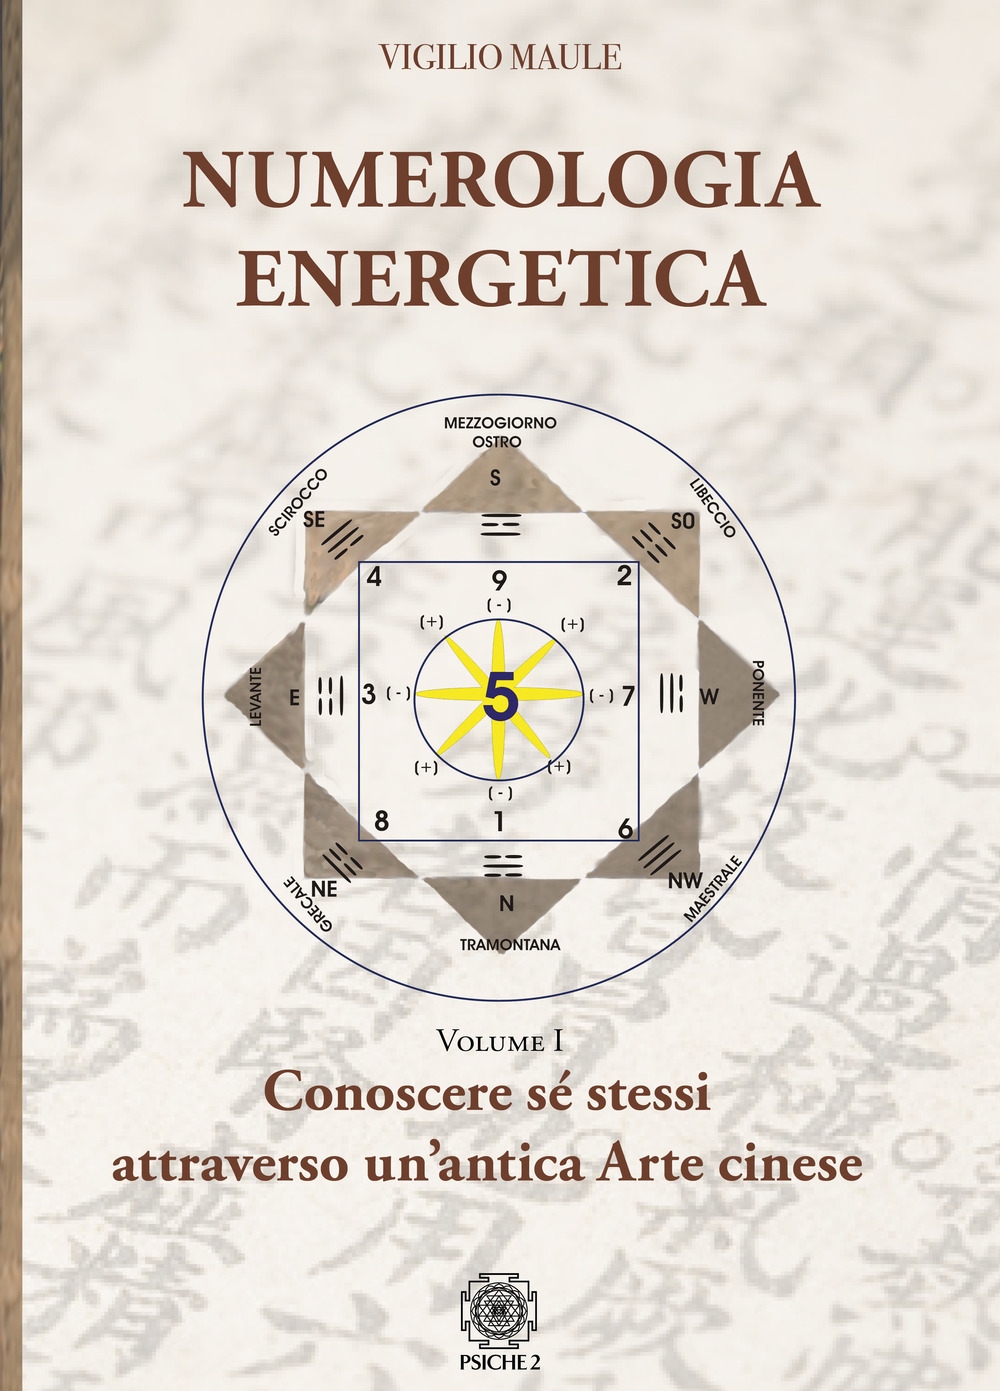 Libri Vigilio Maule - Numerologia Energetica Vol 01 NUOVO SIGILLATO, EDIZIONE DEL 30/01/2020 SUBITO DISPONIBILE